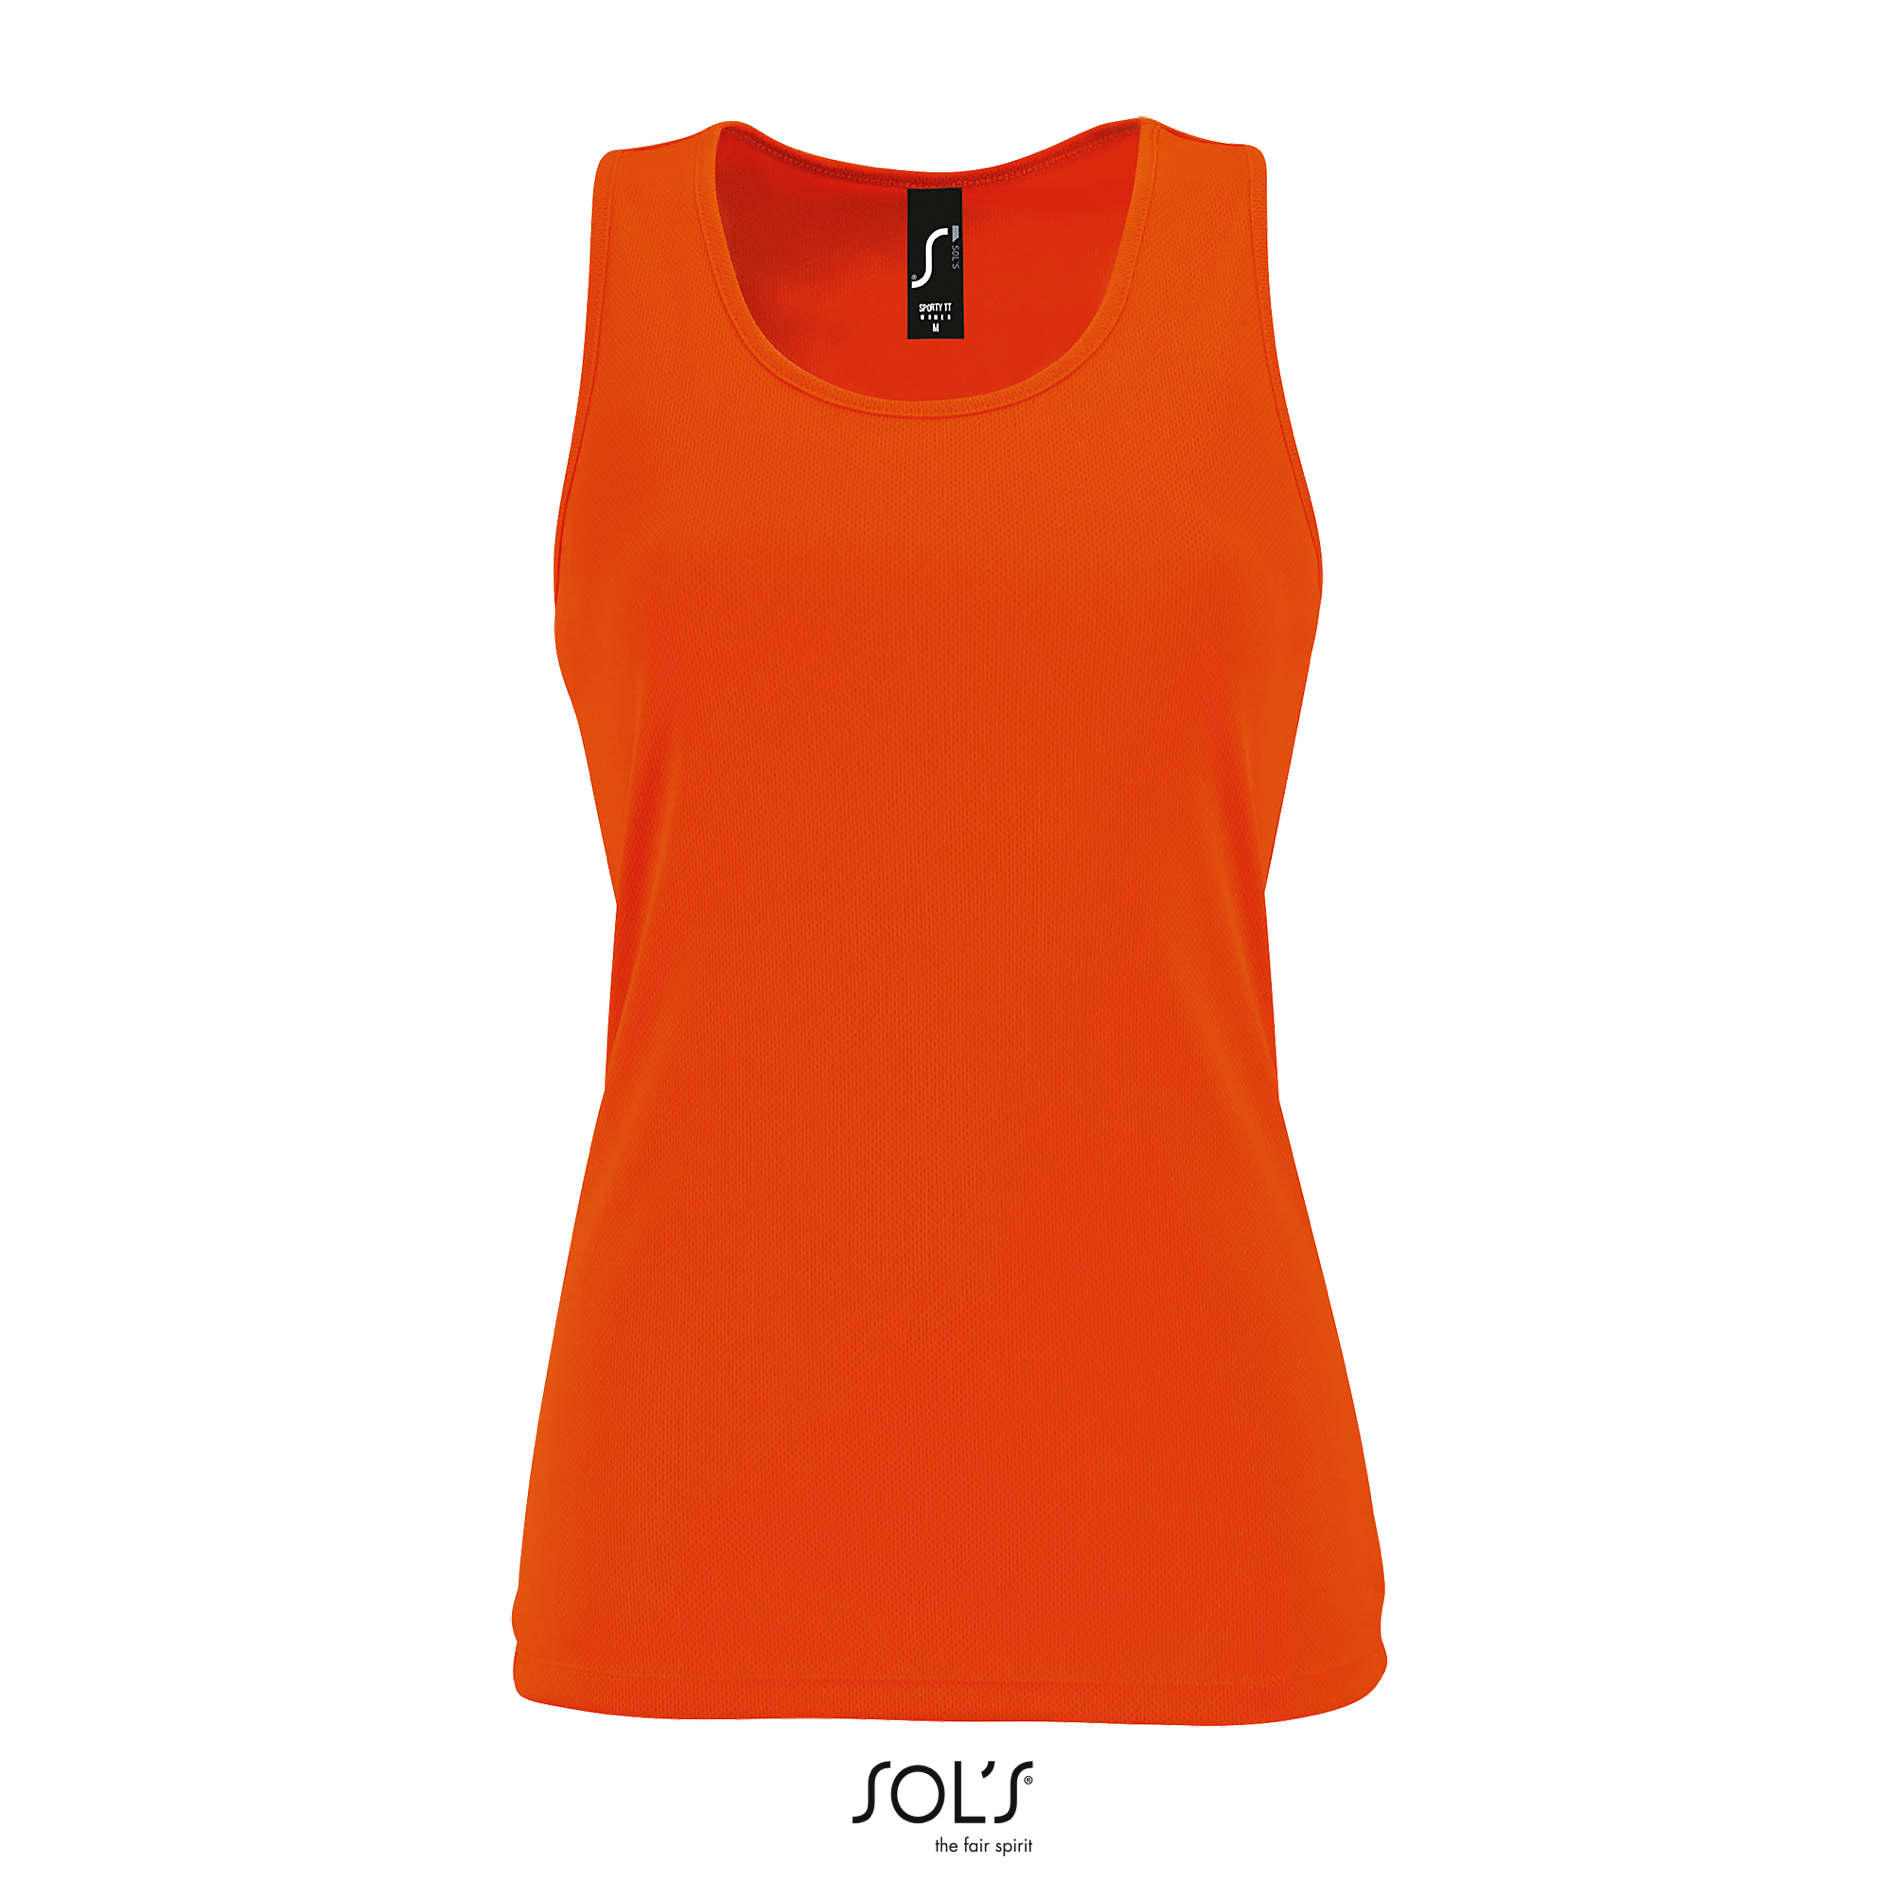 sporty-tt-women-arancio-fluo.webp